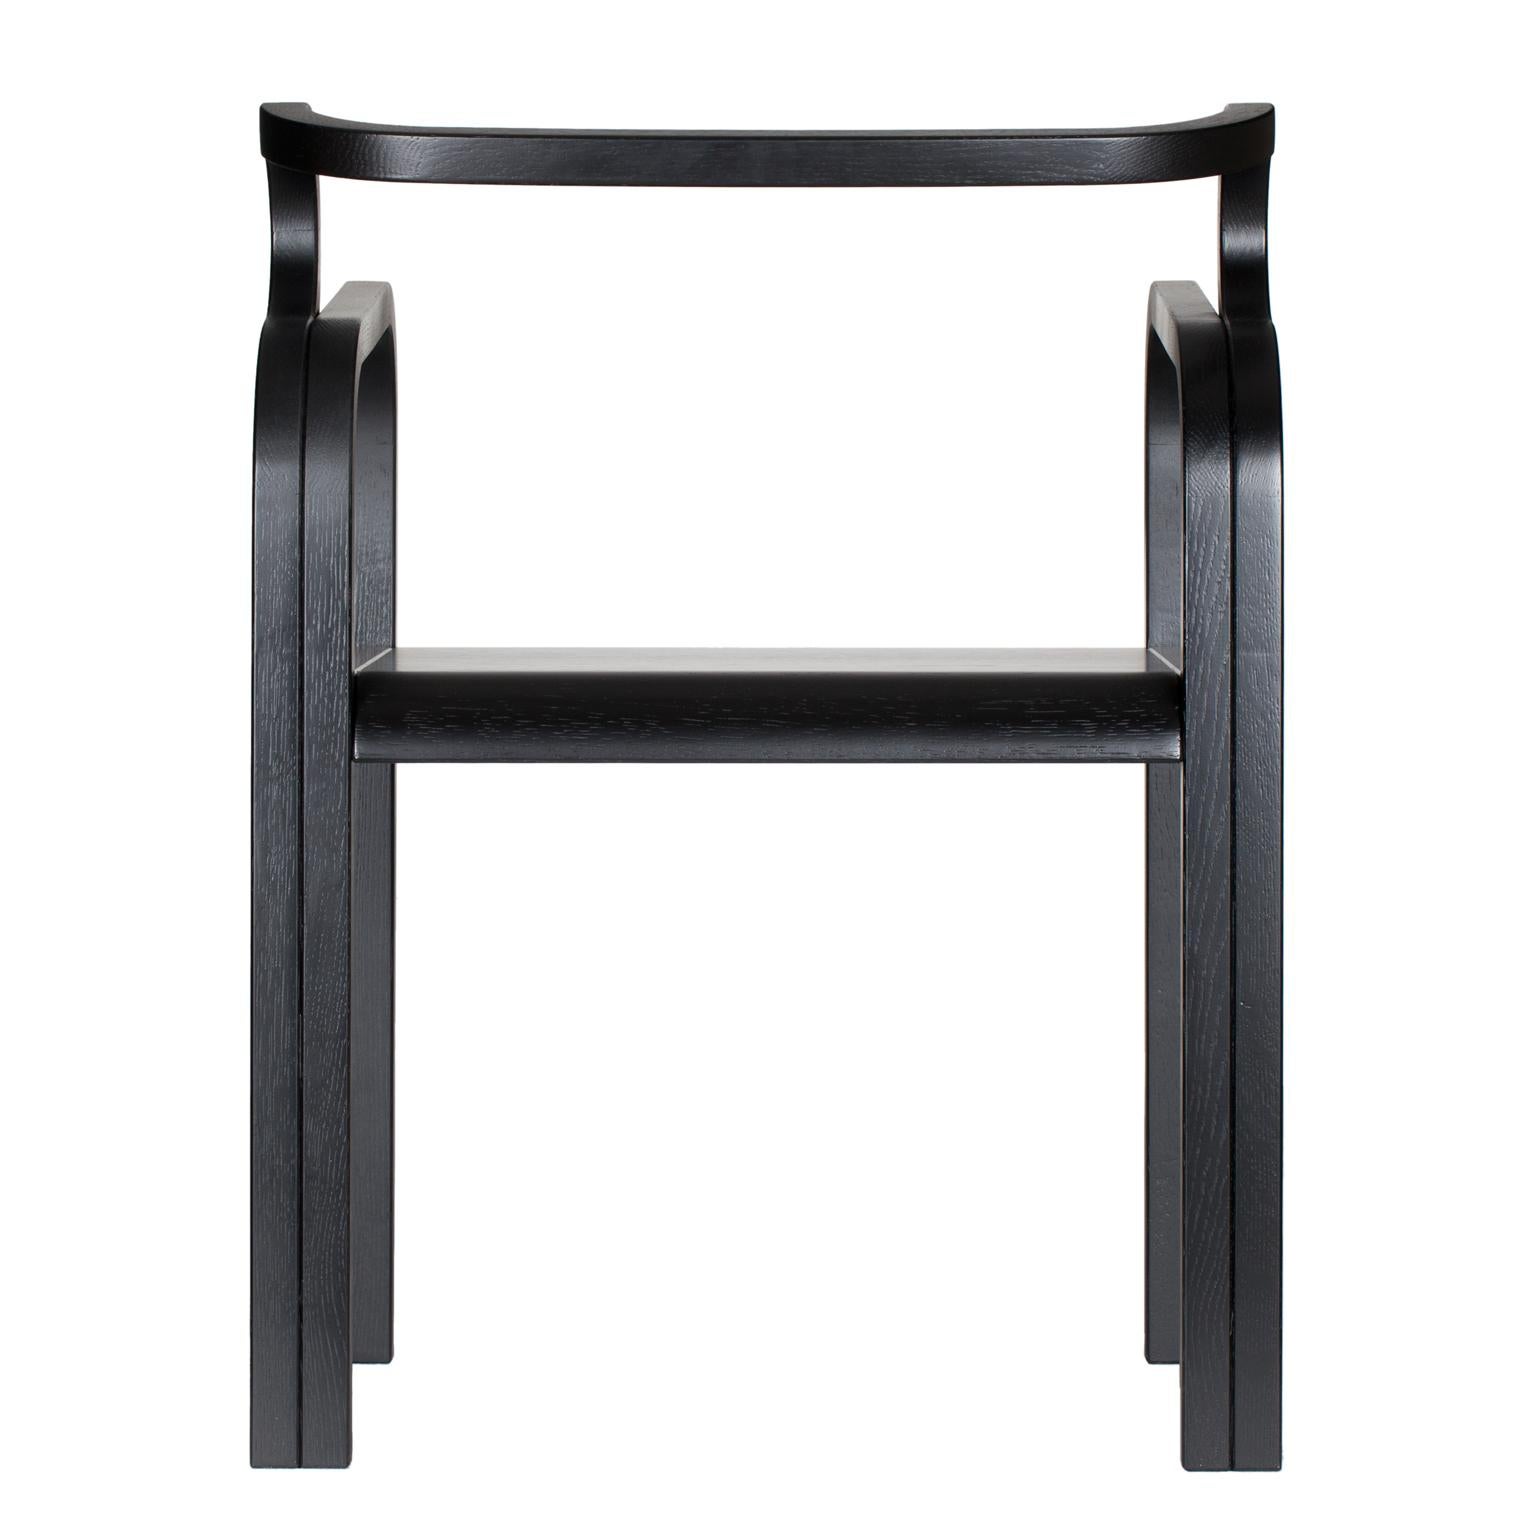 Chaise Odette en chêne noir par Fred&Juul
Dimensions : D 51 x L 58 x H 75 cm.
Matériaux : Chêne.

Disponible en différentes finitions de chêne. Des tailles, des matériaux ou des finitions sur mesure sont disponibles. Veuillez nous contacter.

Eleg